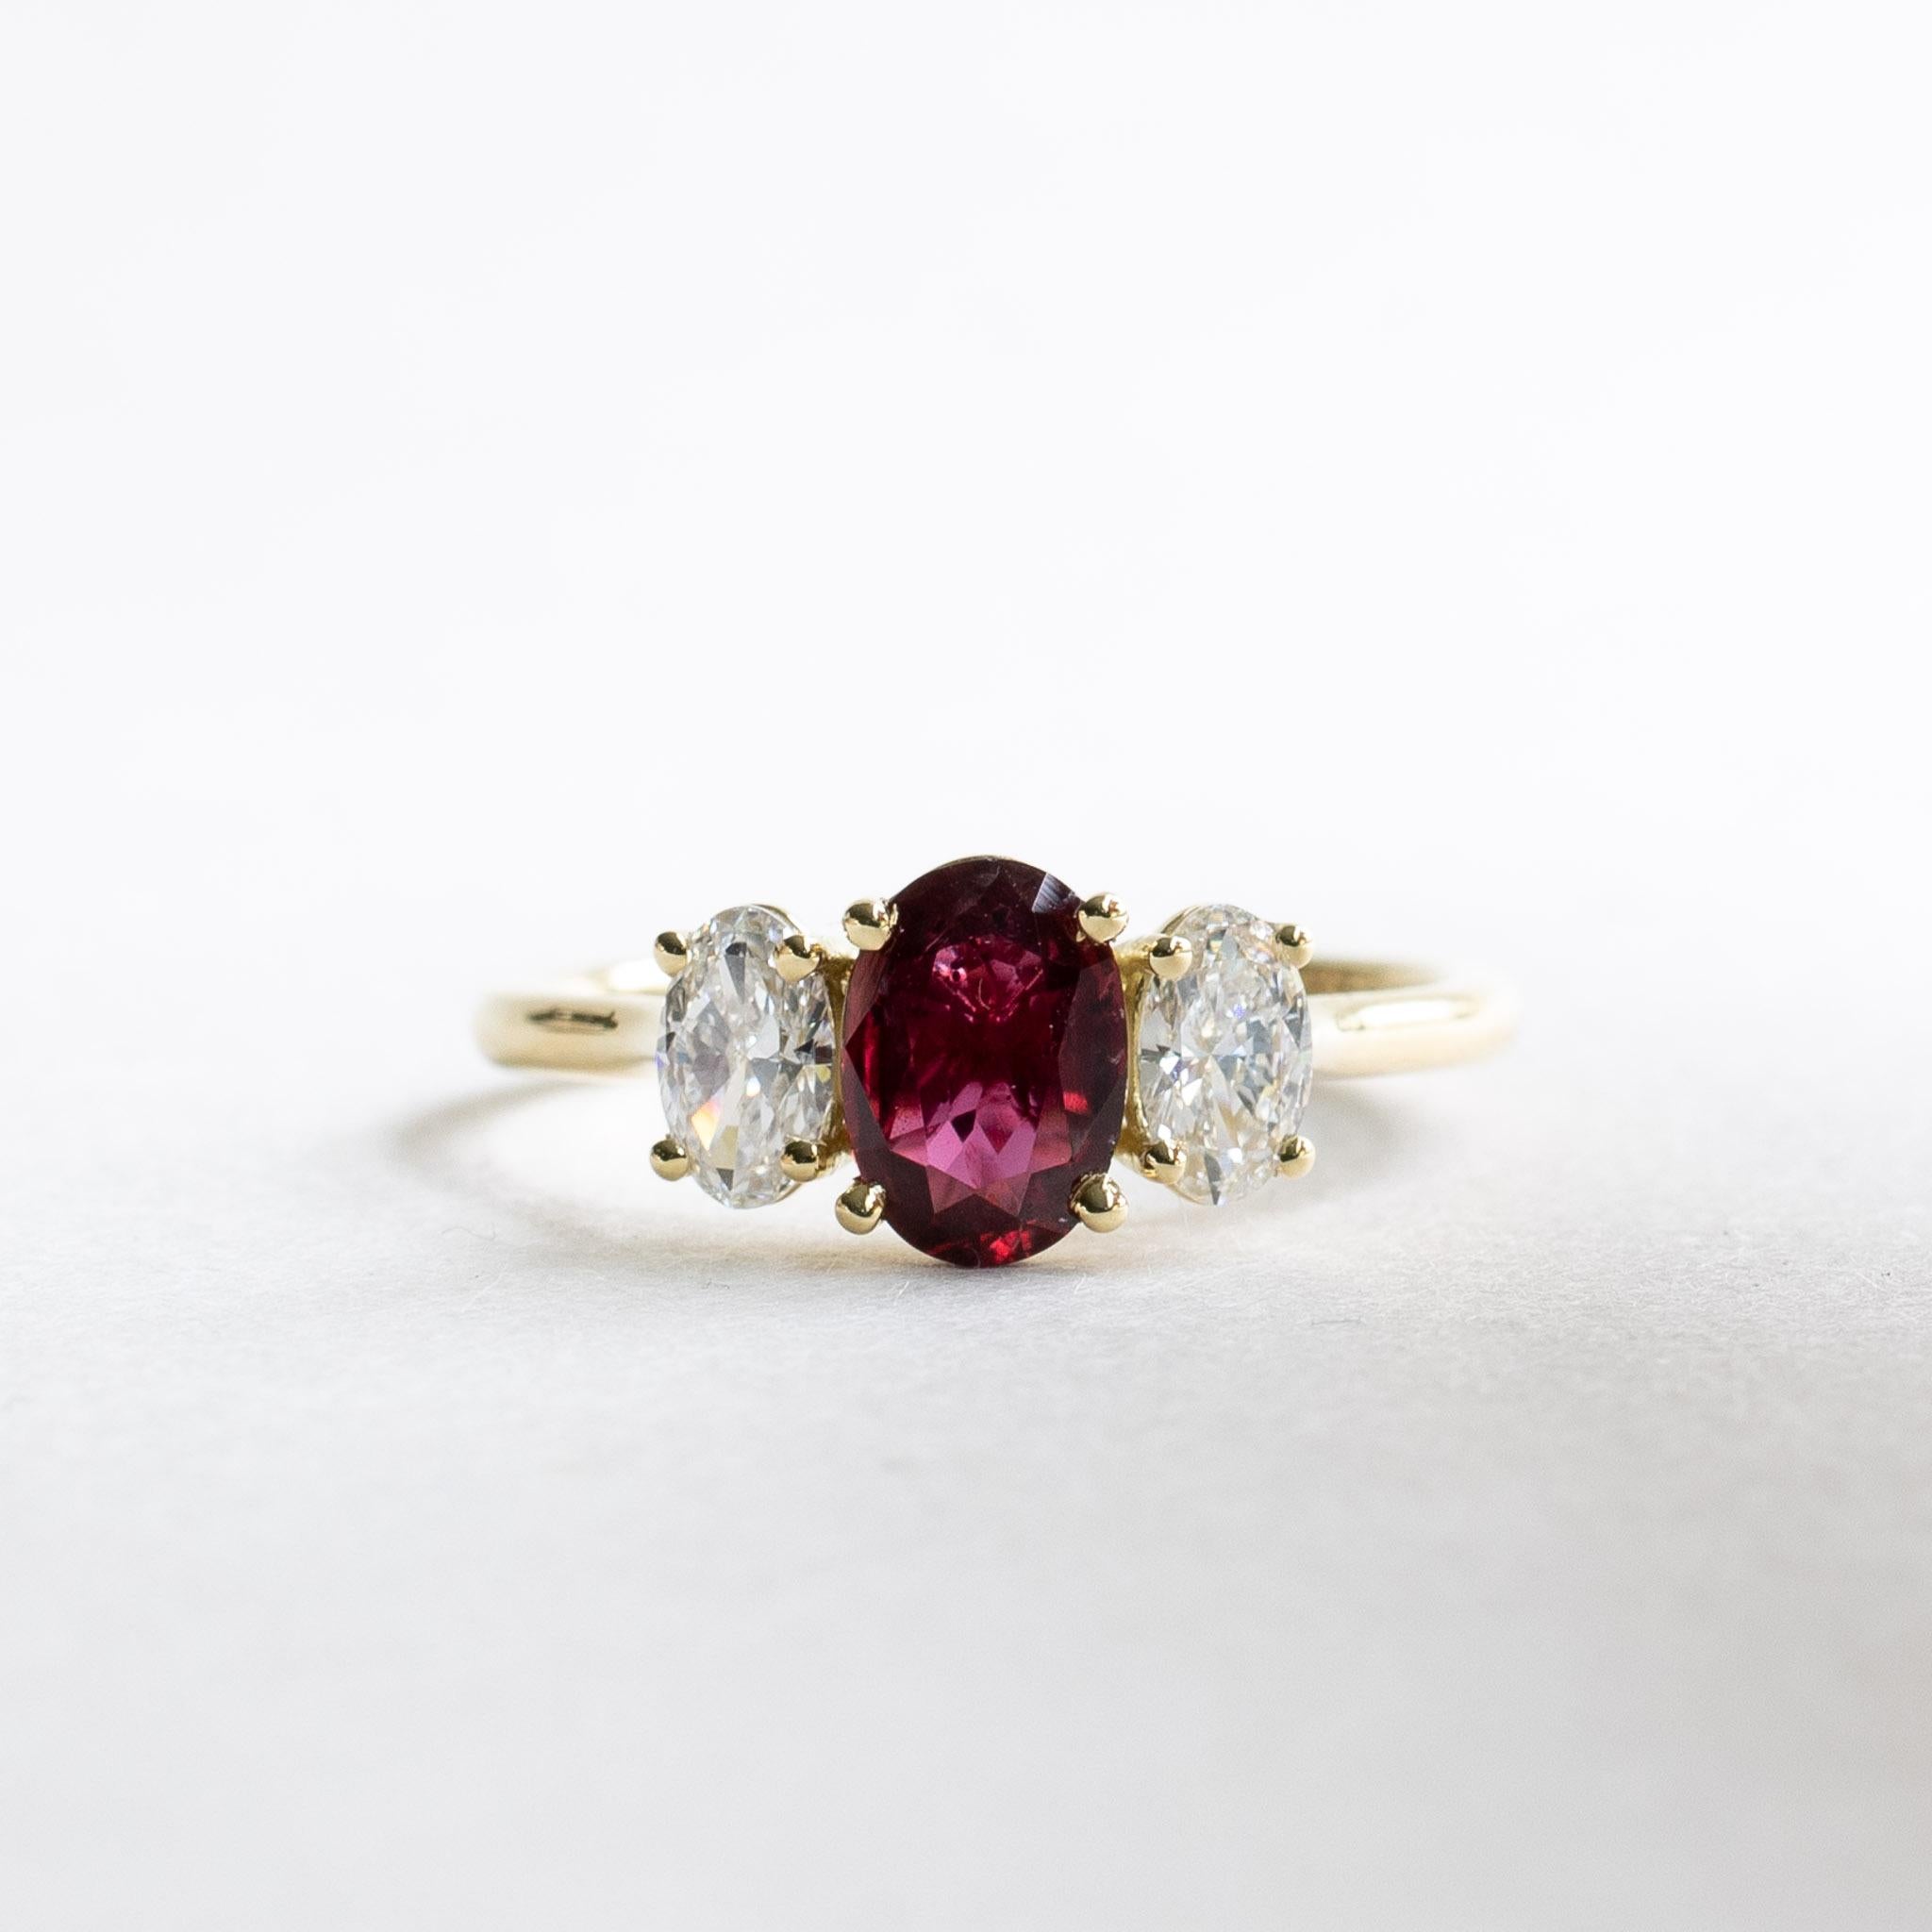 Women's 18karat Certified 0.88 Carat Ruby Diamond Ring, Three Stone Engagement Ring